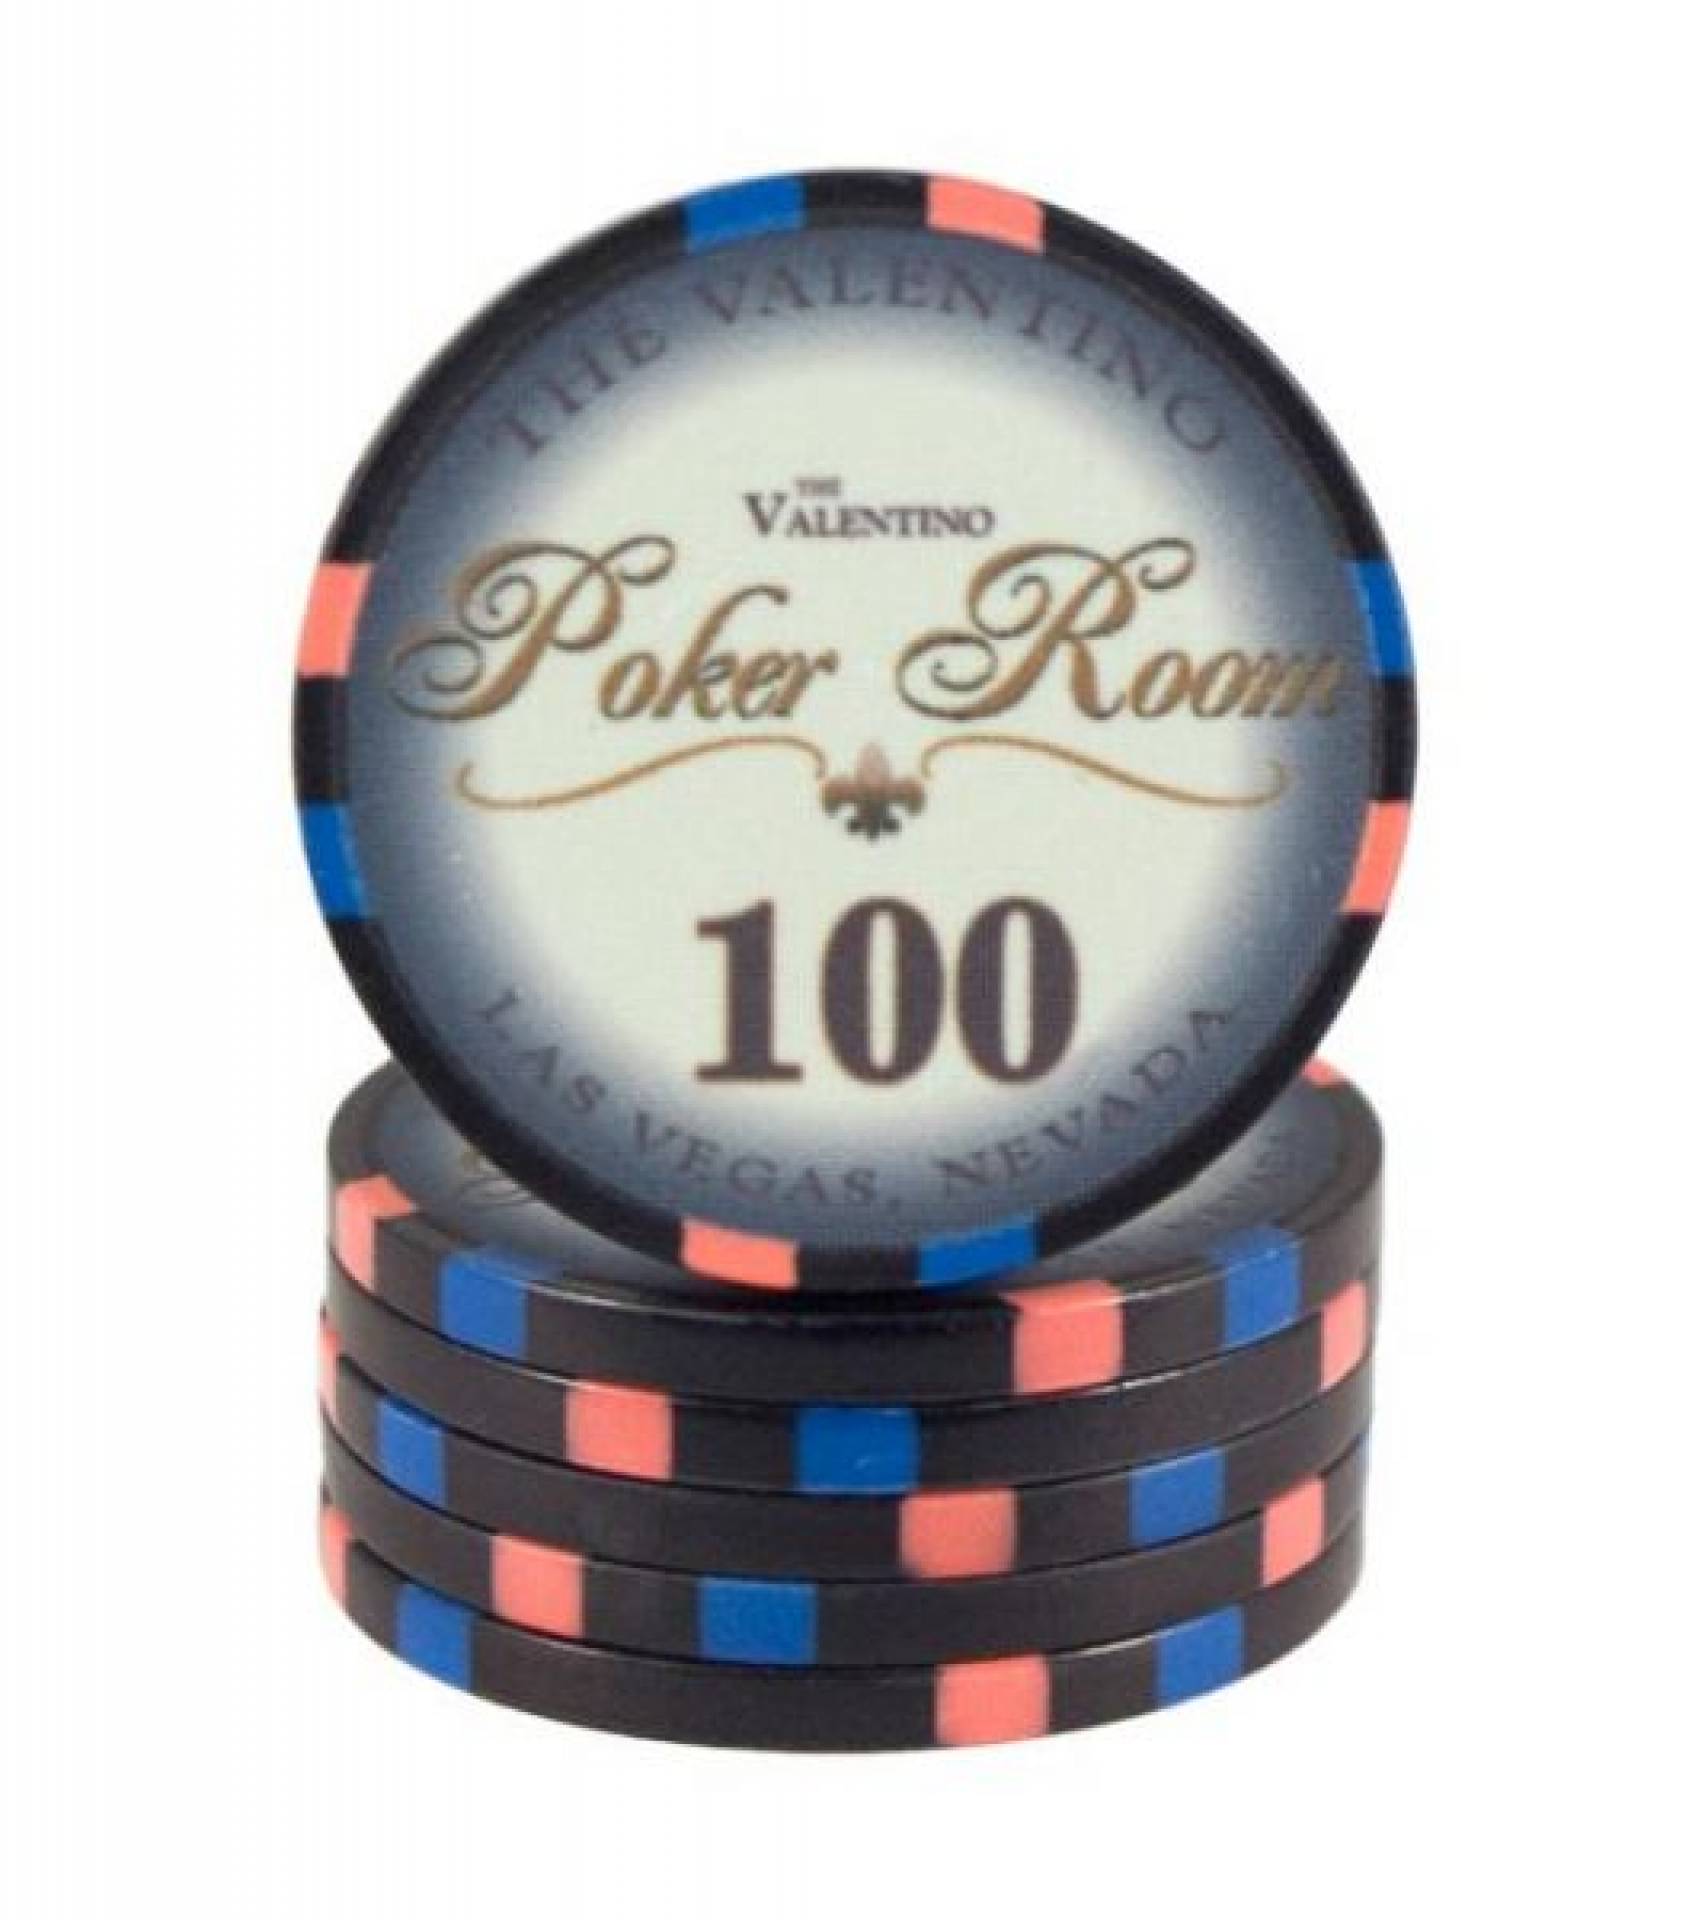 Poker chip Valentino - hodnota 100